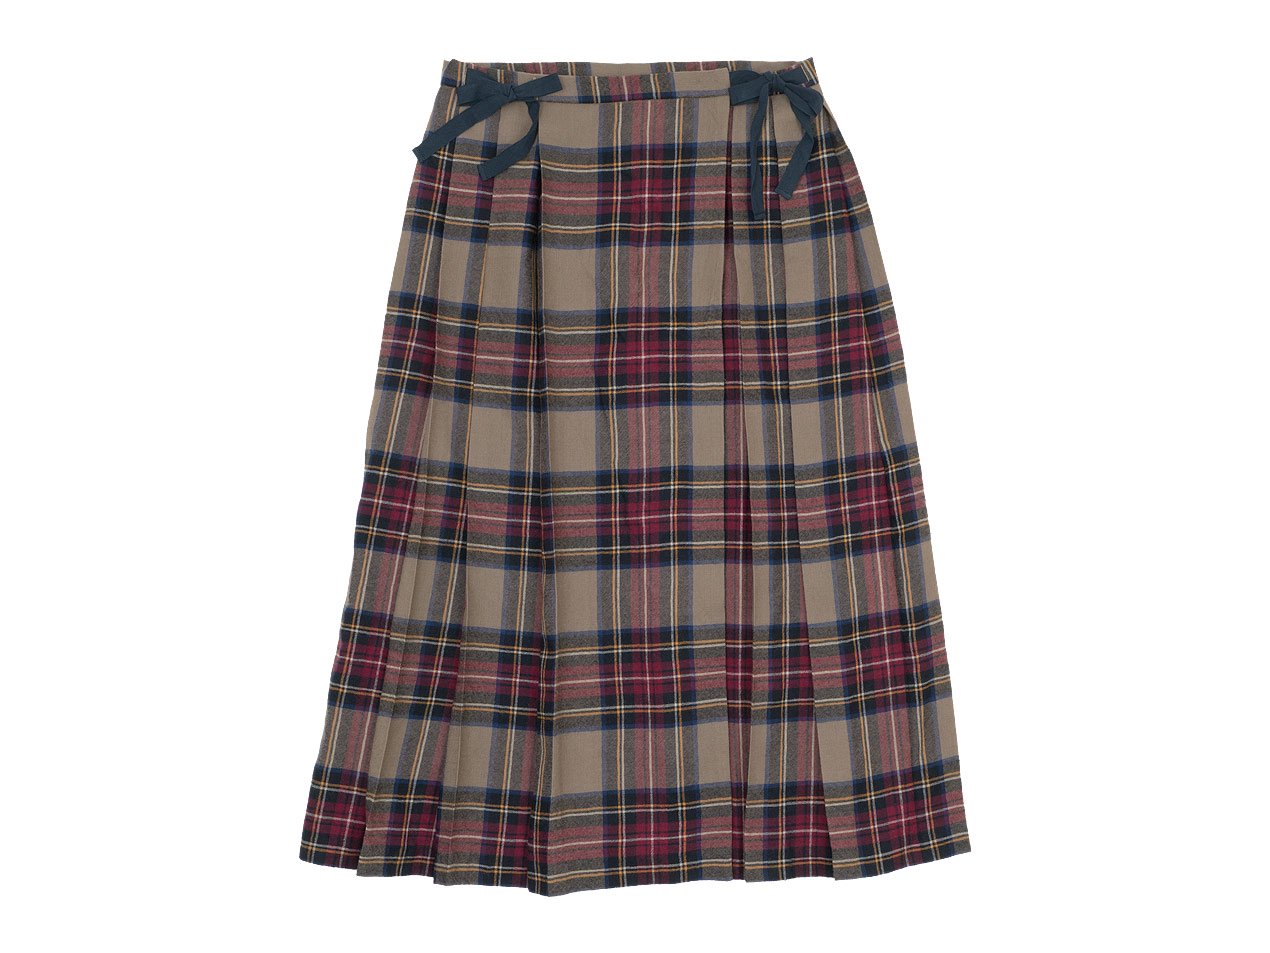 TOUJOURS Kilt Pleated Long Skirt